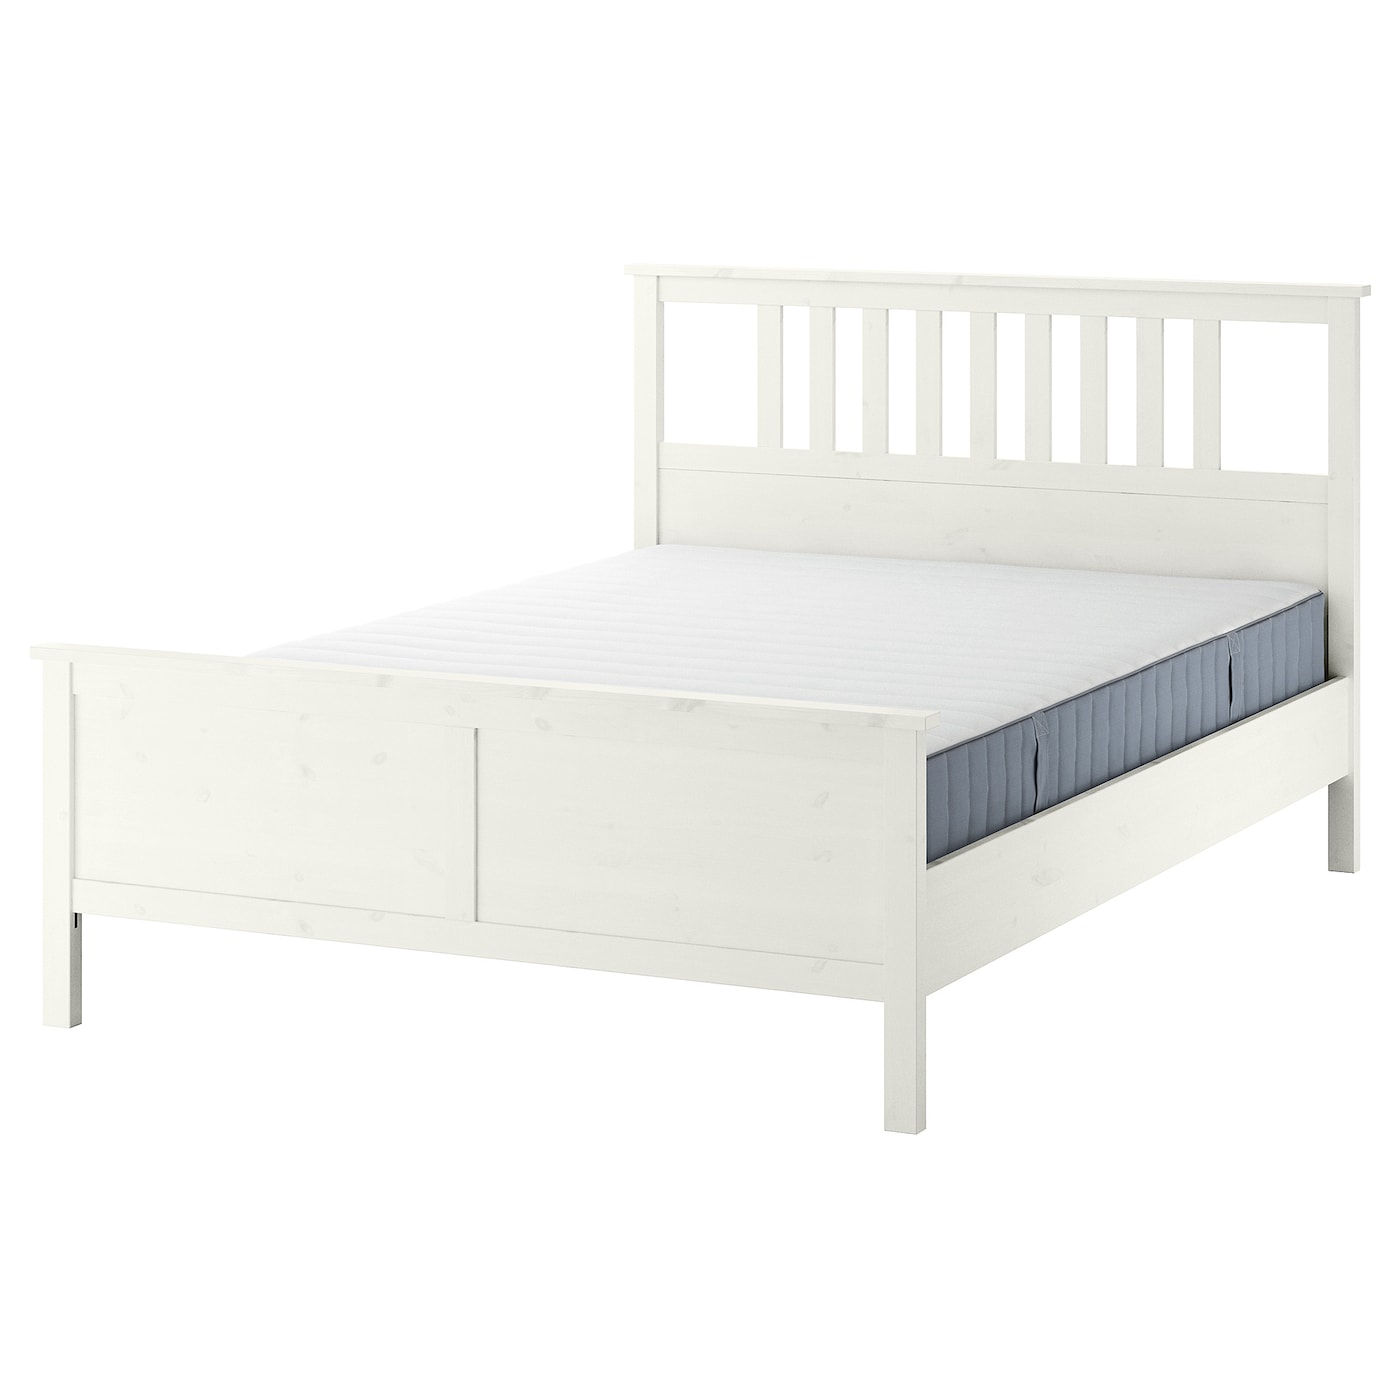 Каркас кровати - IKEA HEMNES, 200х160 см, жесткий матрас, белый, ХЕМНЕС ИКЕА